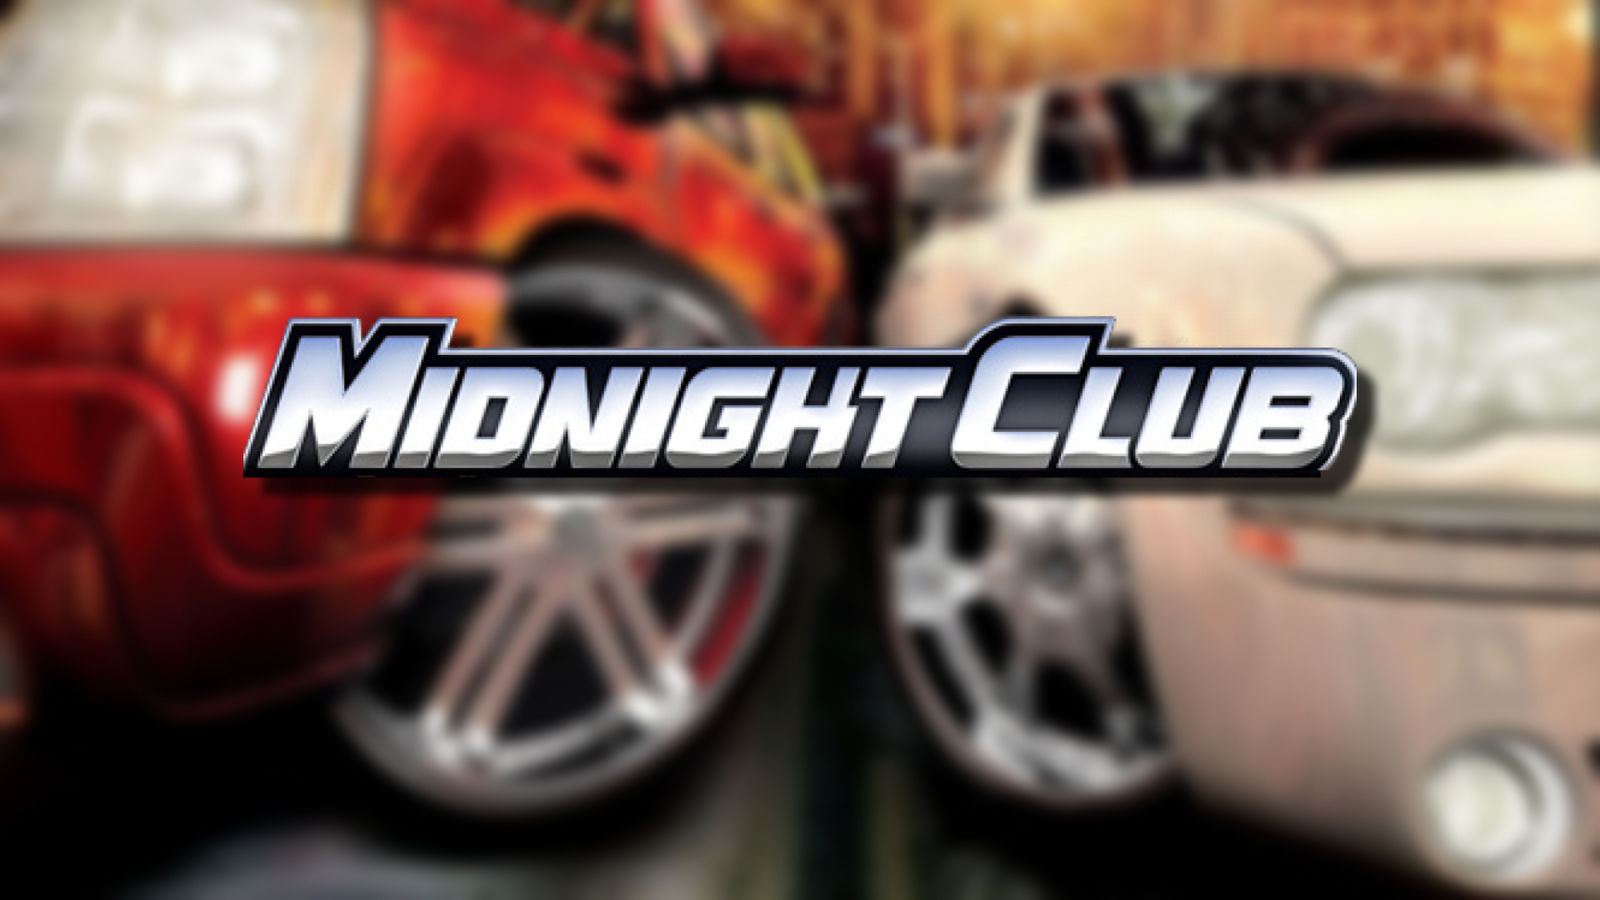 Si Midnight Club fait son retour, il était temps - Take-Two est assis sur un joyau d'une franchise